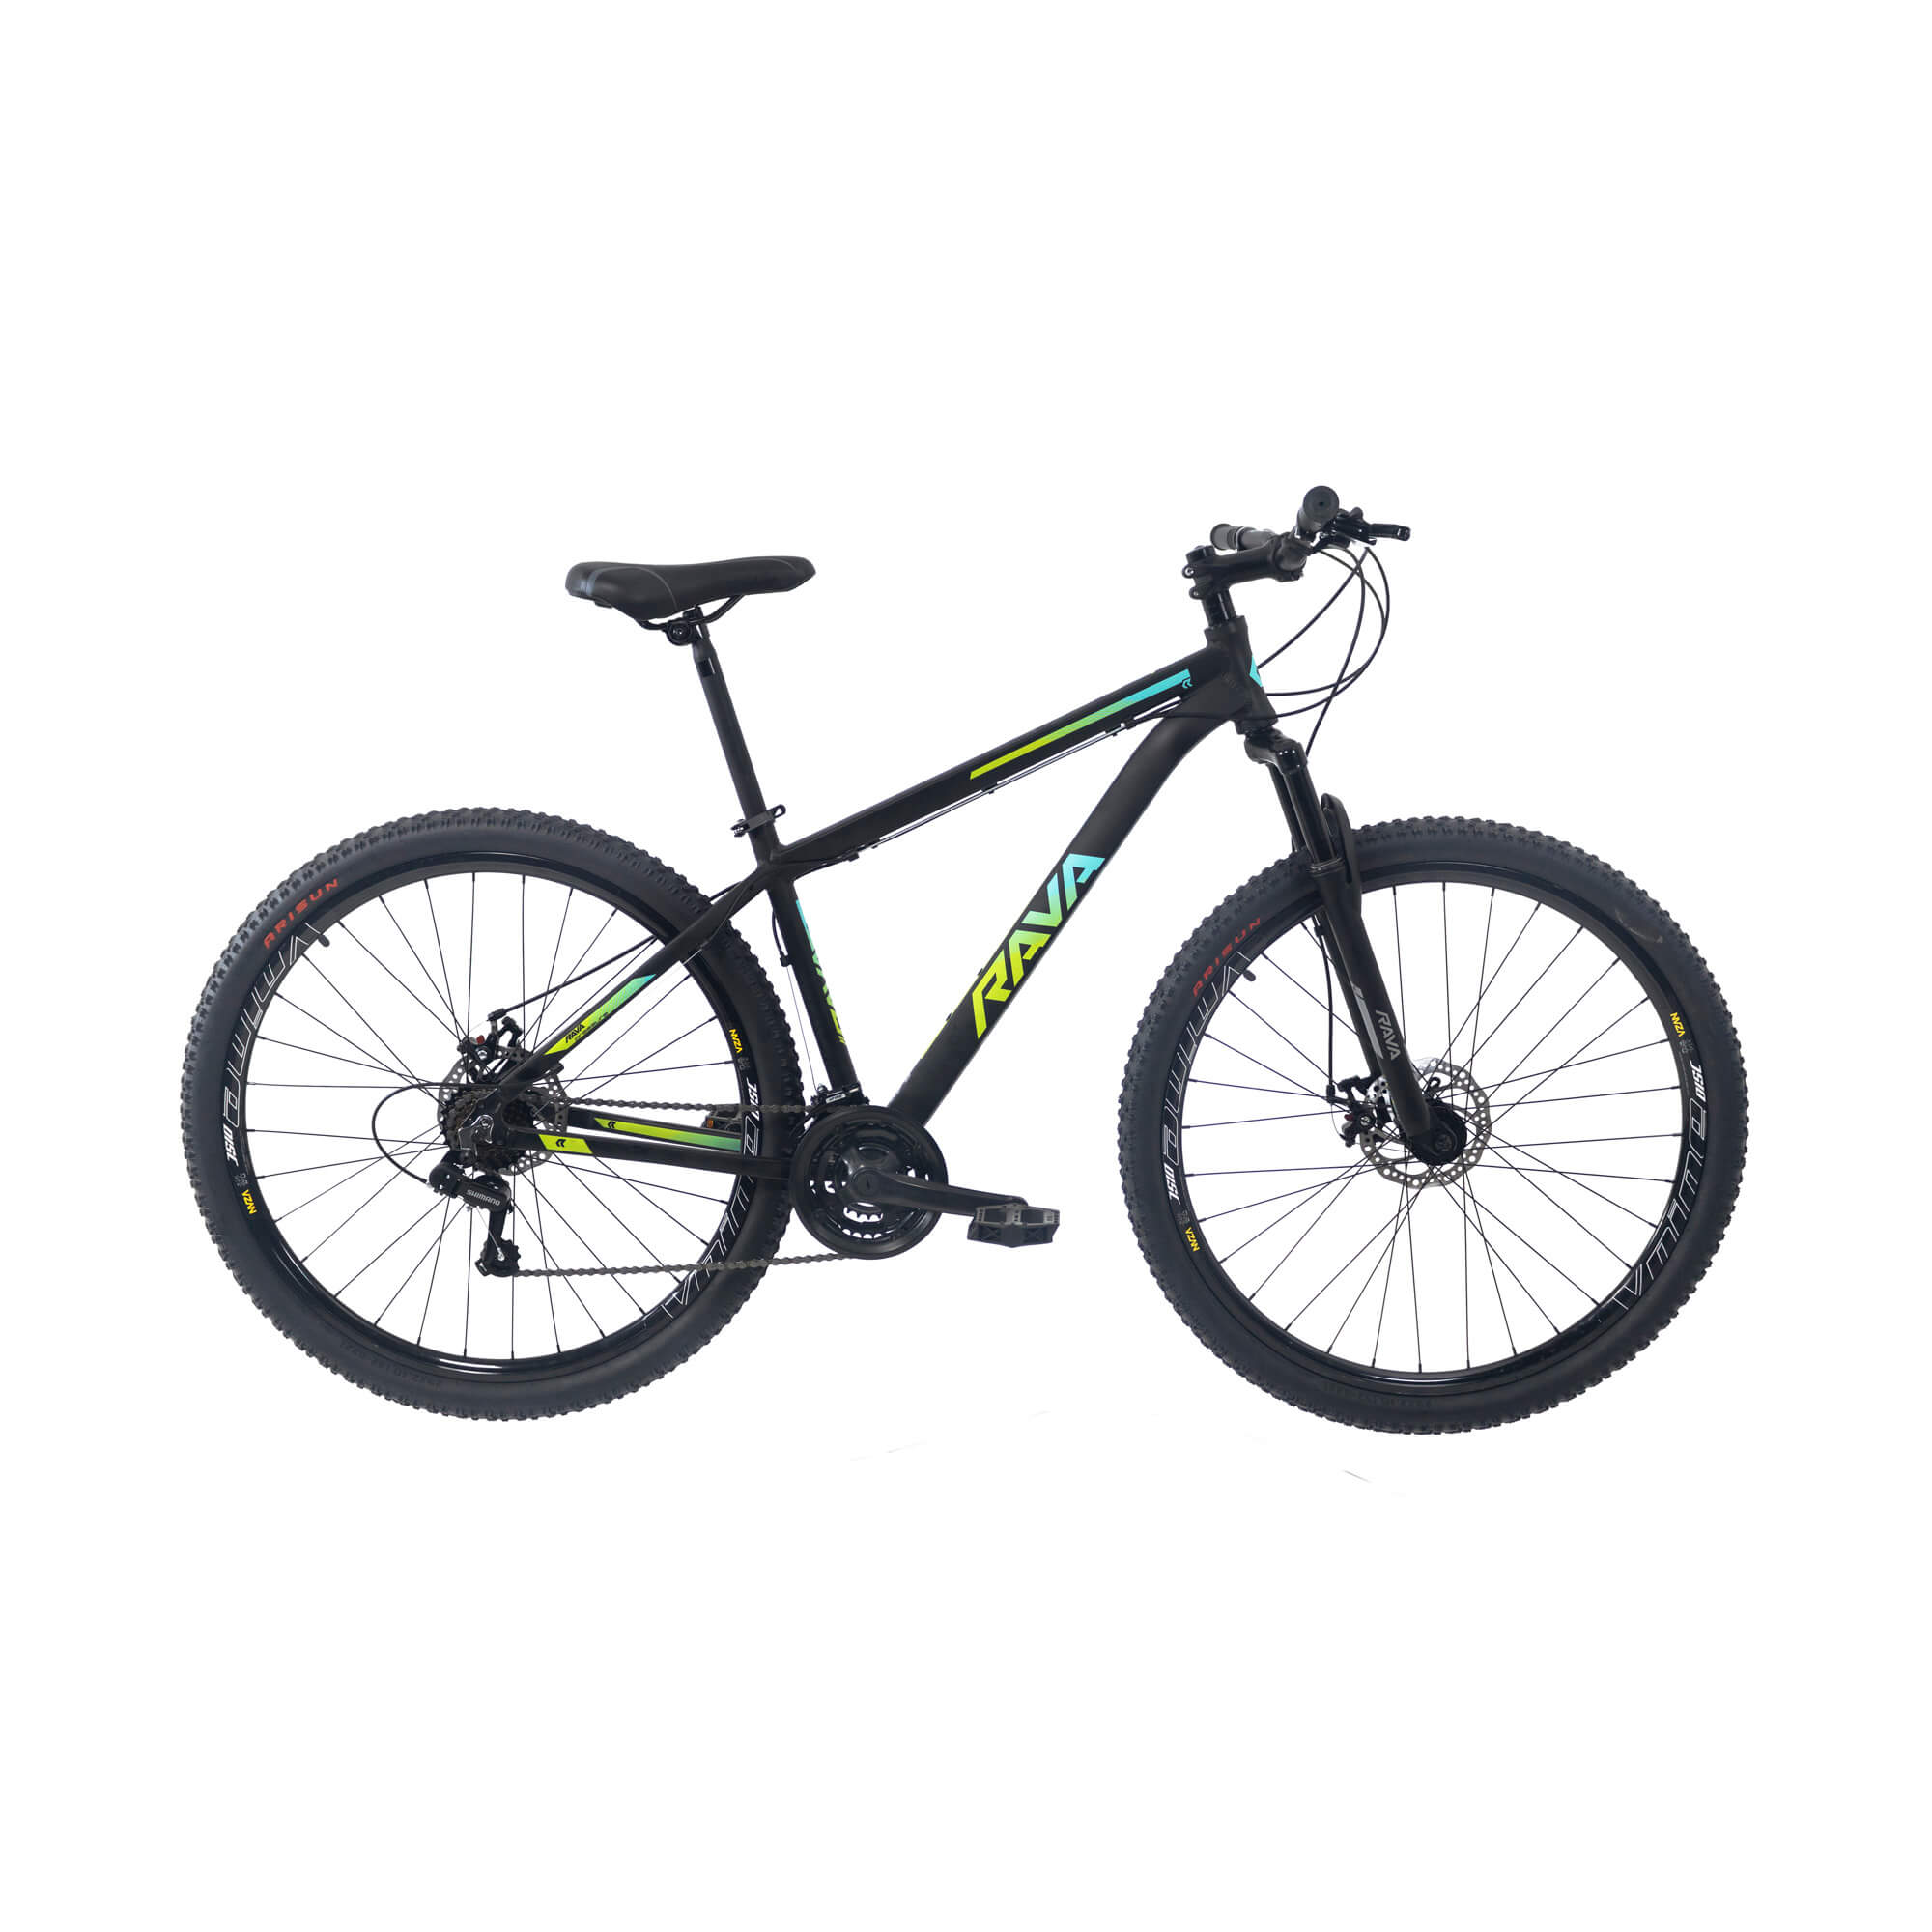 Bicicleta Rava Pressure 2019/2020 | 21 v. - Preto/Verde/Azul, 17"